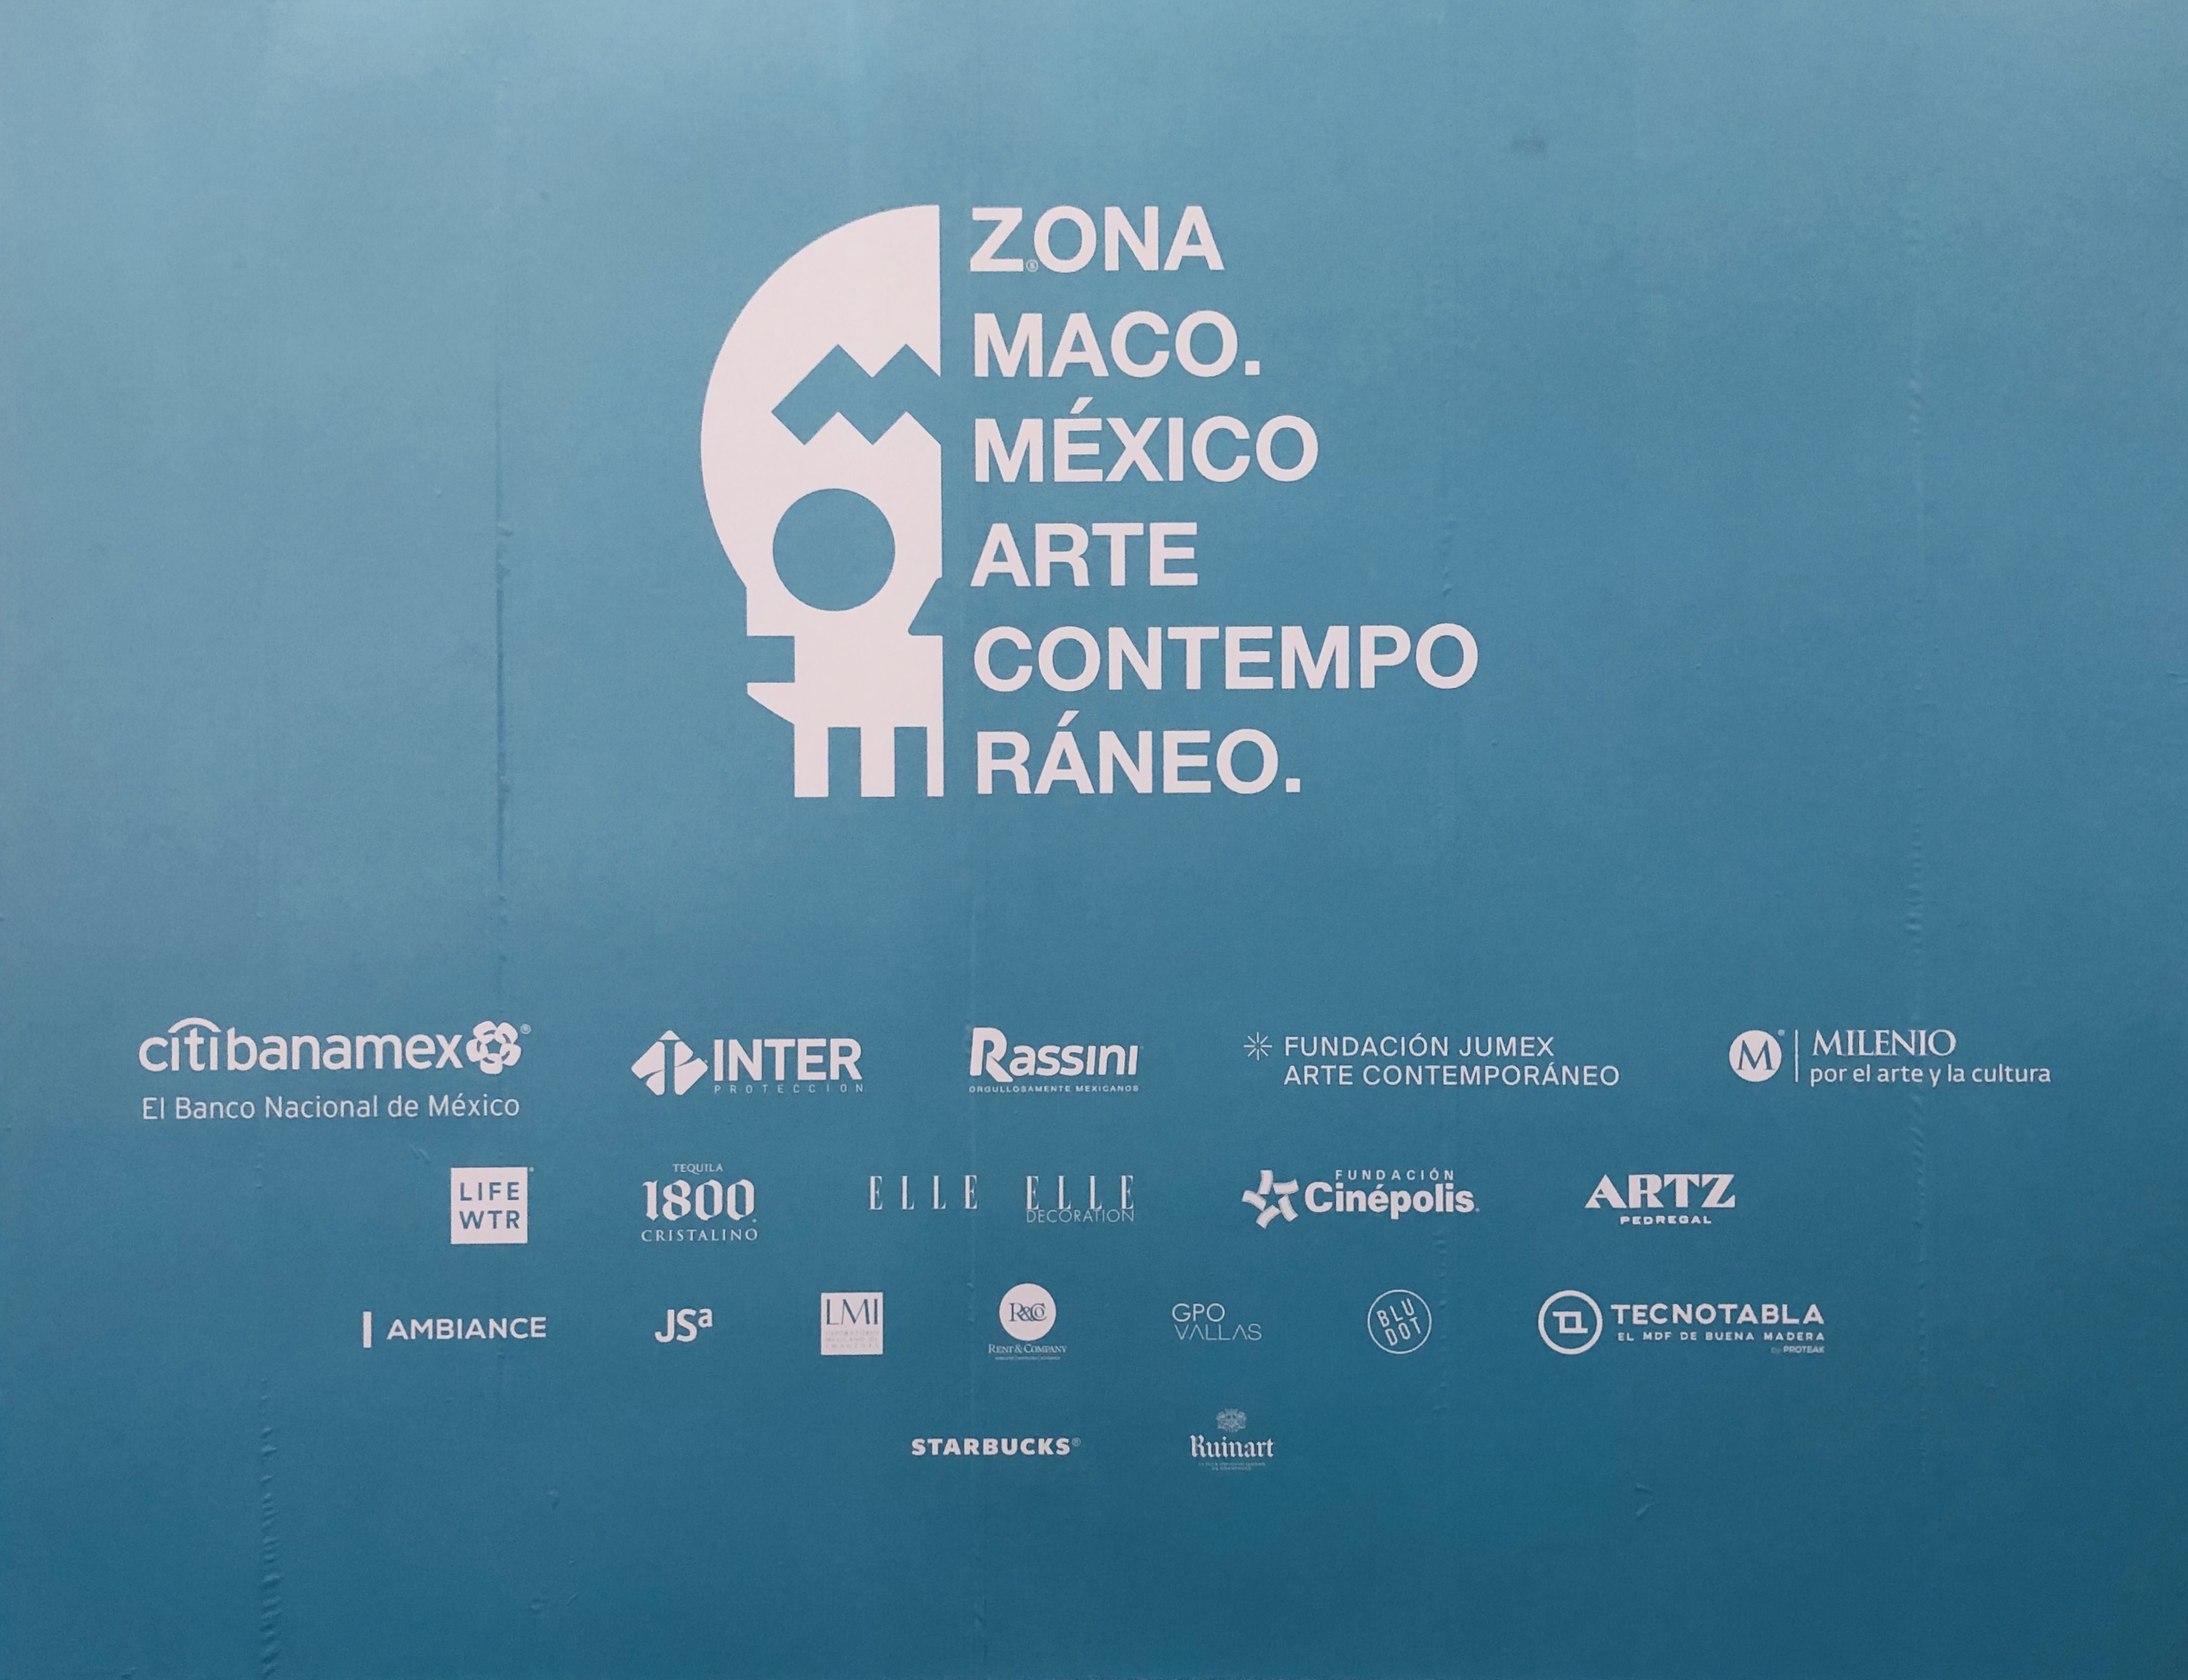 Cientos de expositores internacionales y mexicanos se encontrarán en ZONA MACO México 2019 del 6 al 10 de febrero en el Centro Citibanamex.